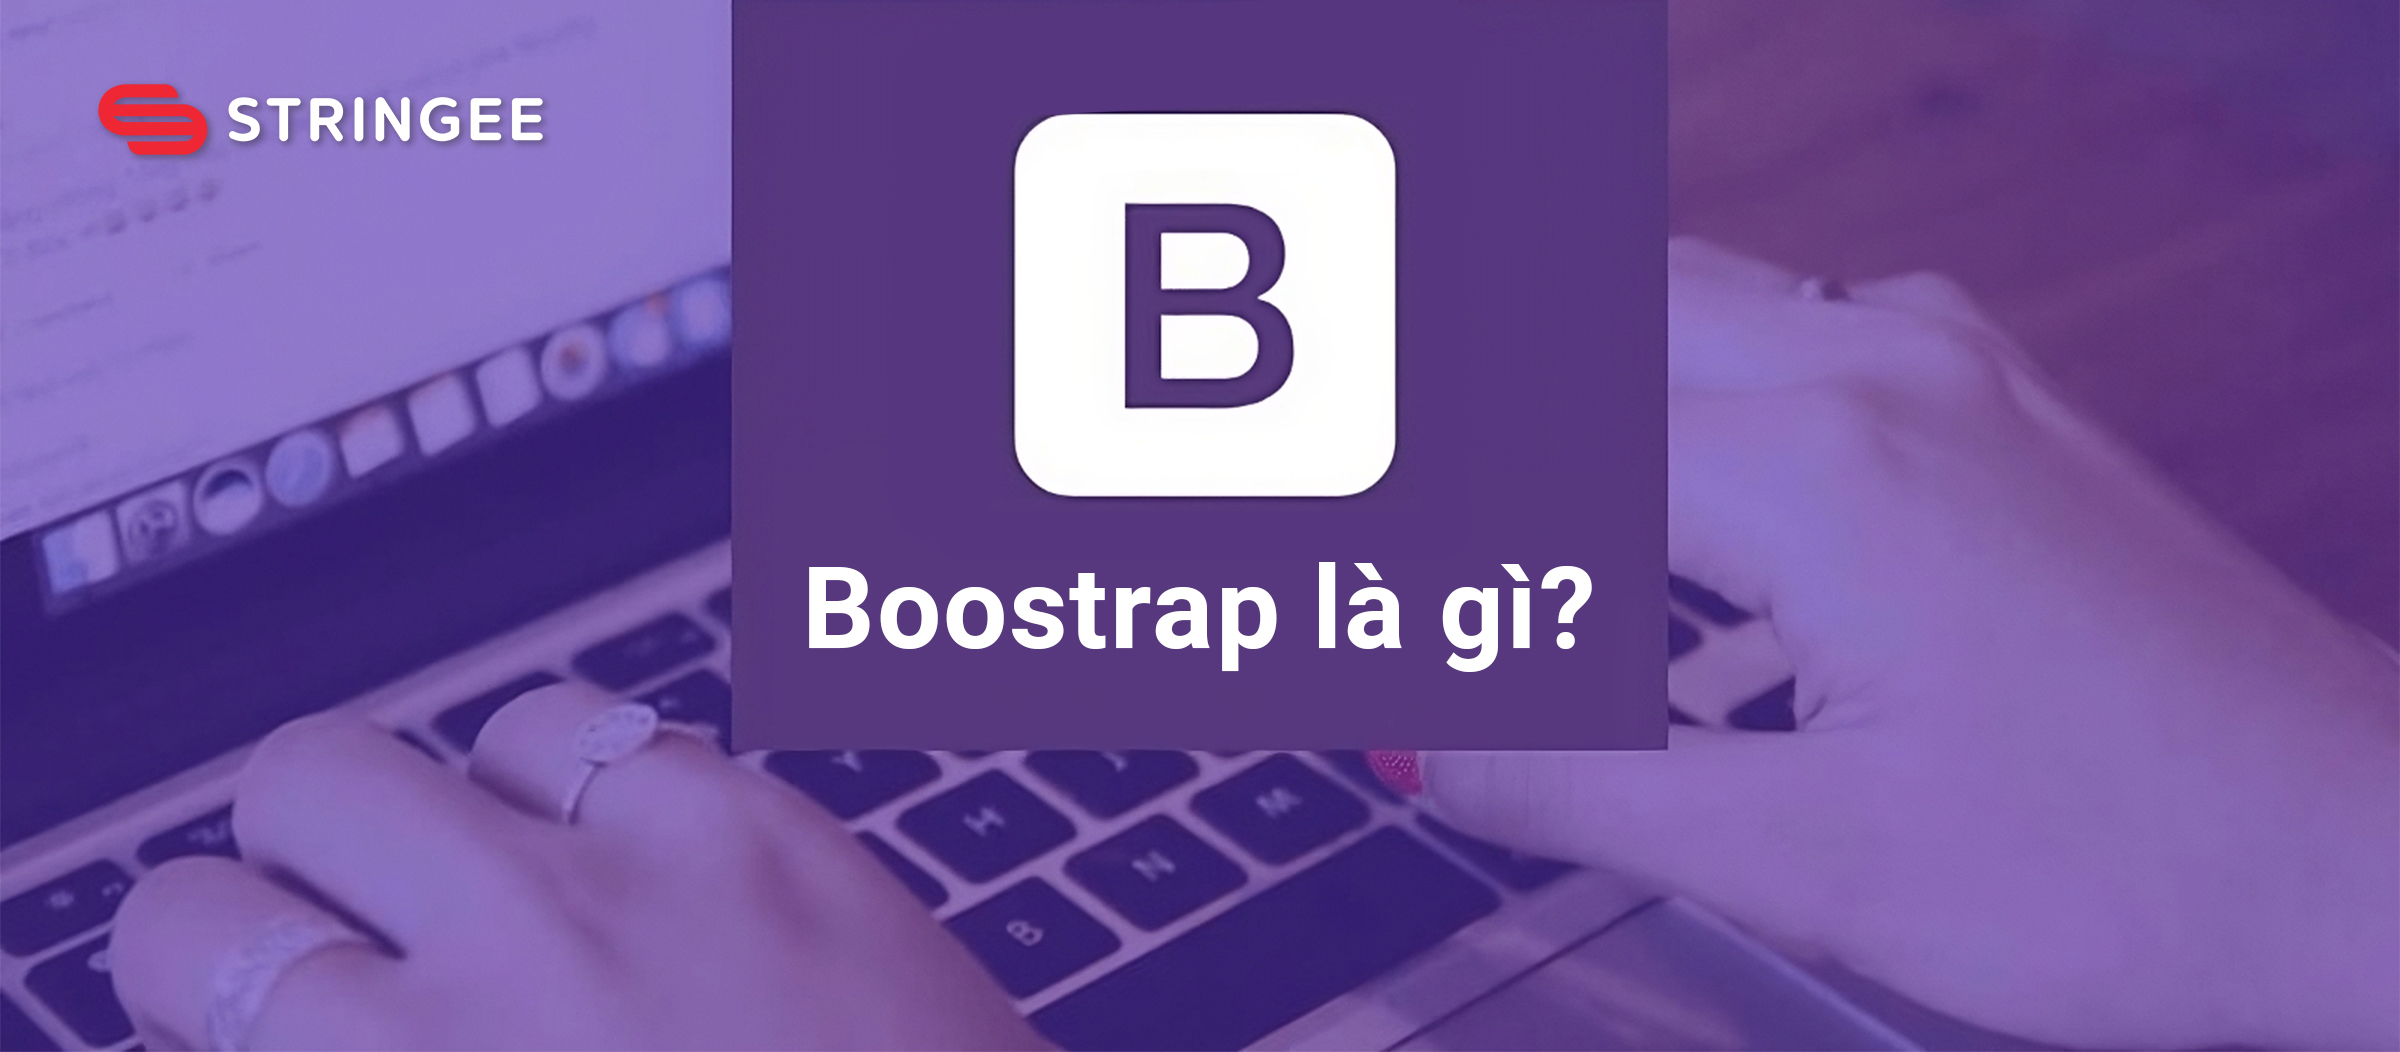 Bootstrap là gì? Hướng dẫn cách sử dụng Bootstrap